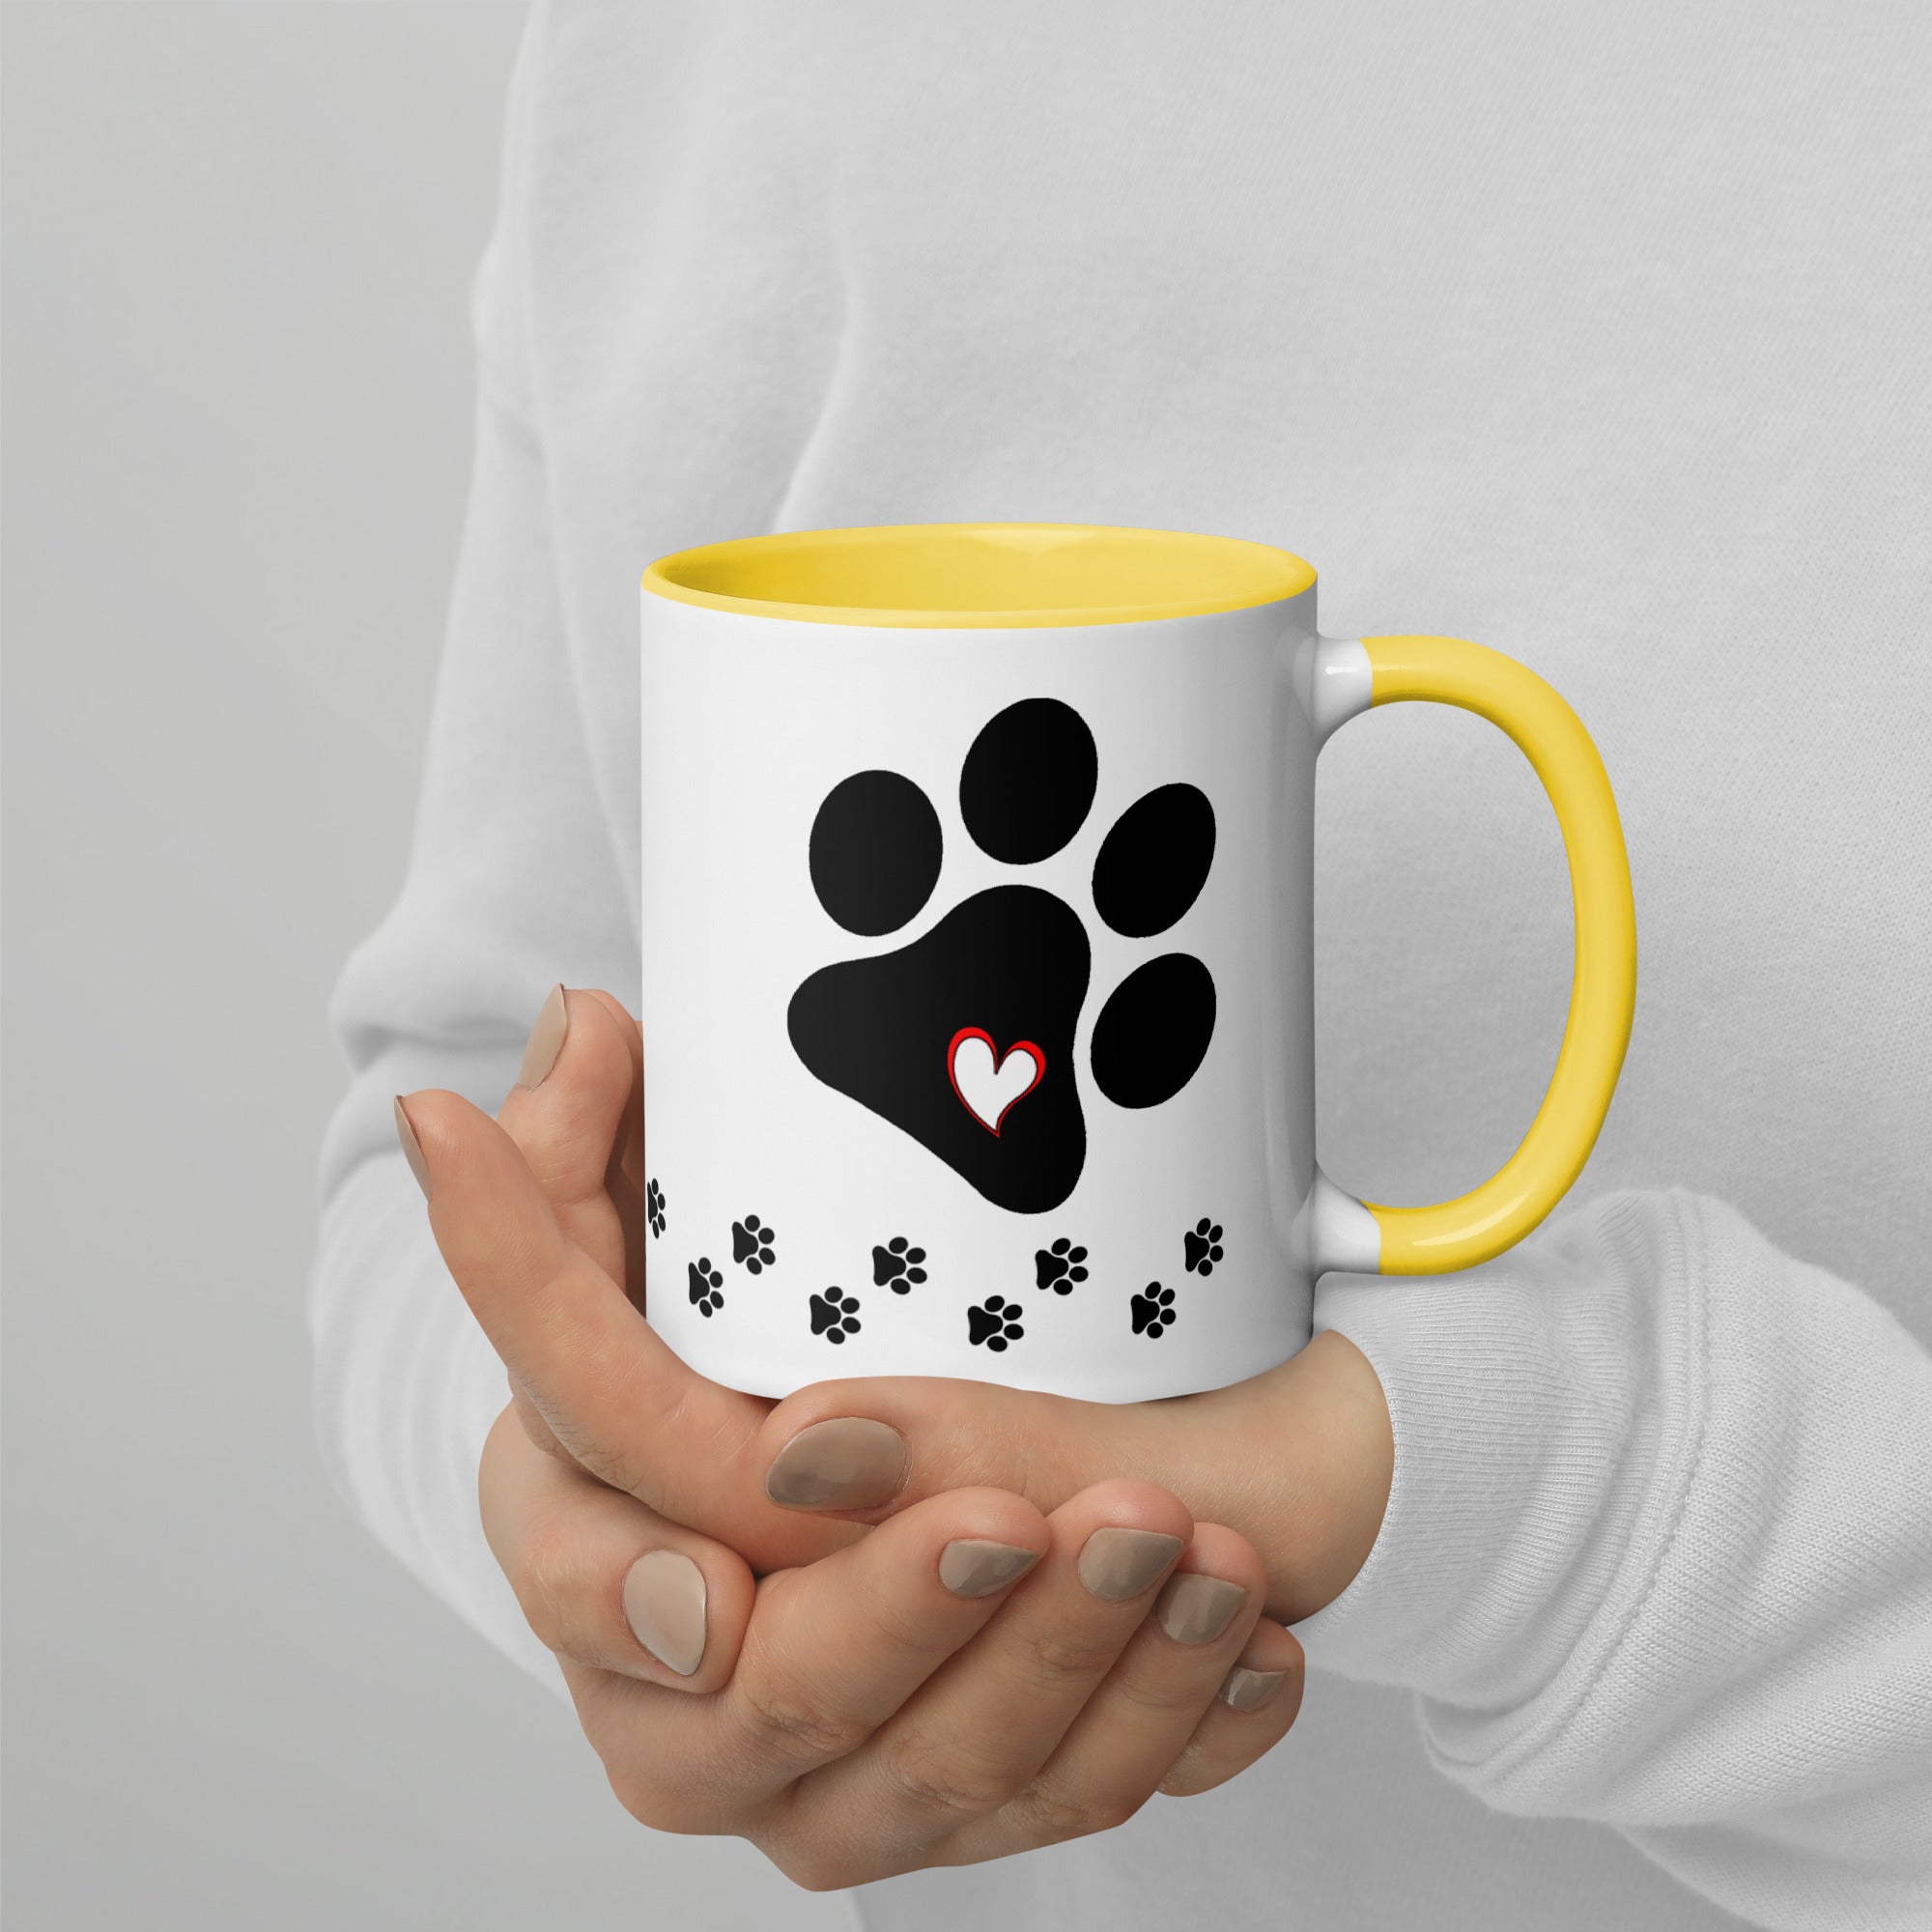 Dog Mom Paw Print Mug with Color Inside